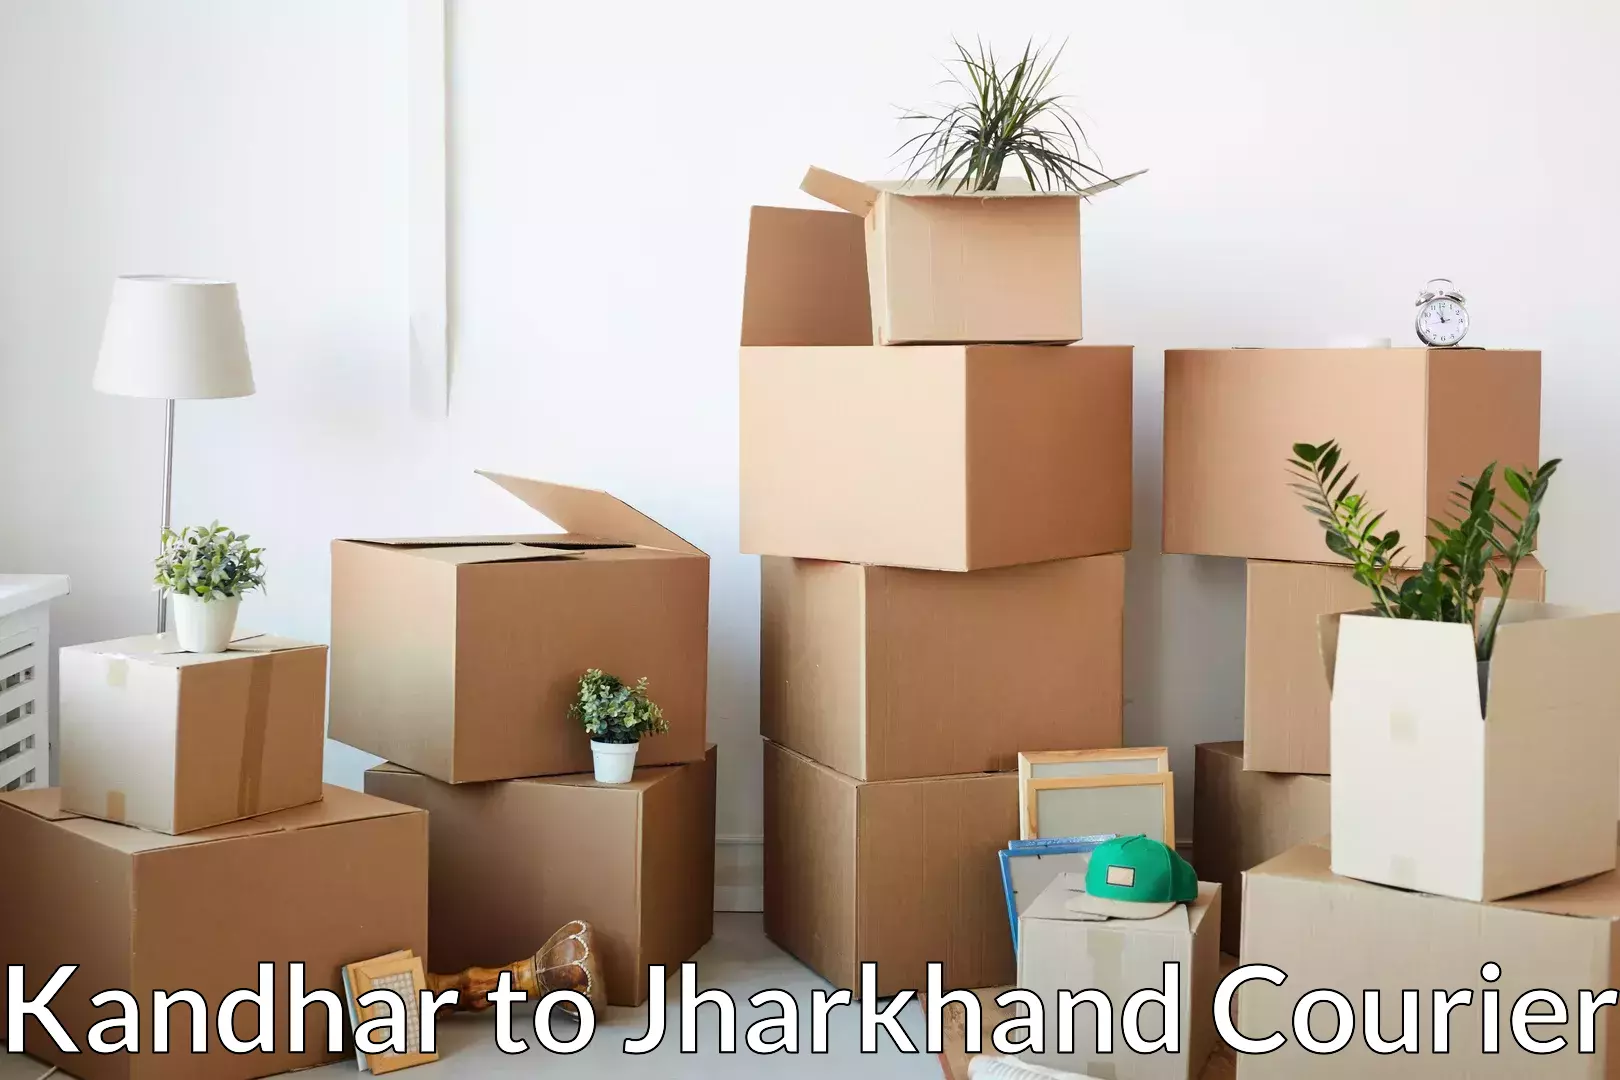 Furniture moving experts Kandhar to Ormanjhi